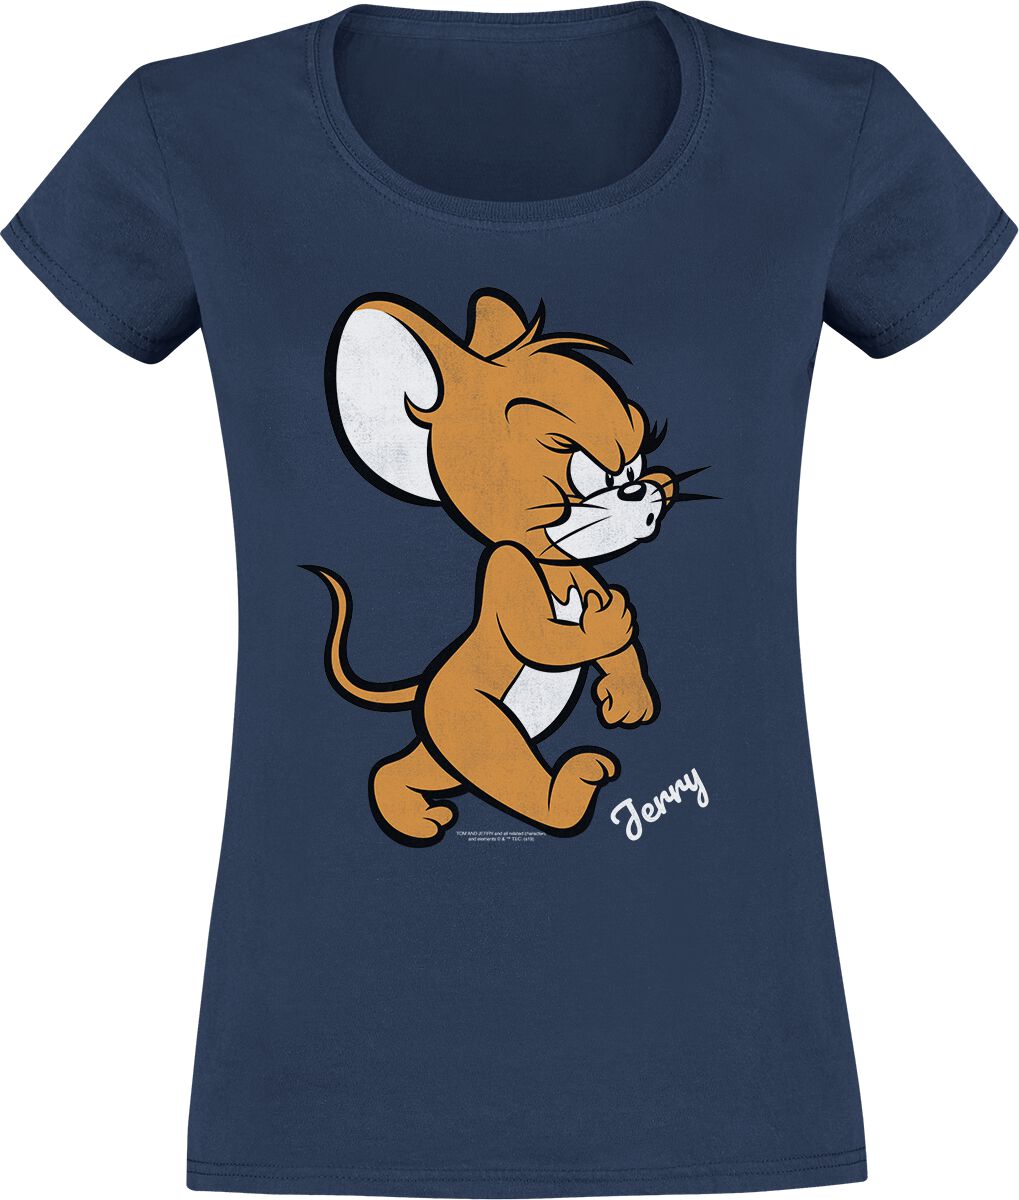 T-Shirt Manches courtes de Tom Et Jerry - Jerry - S à XXL - pour Femme - marine